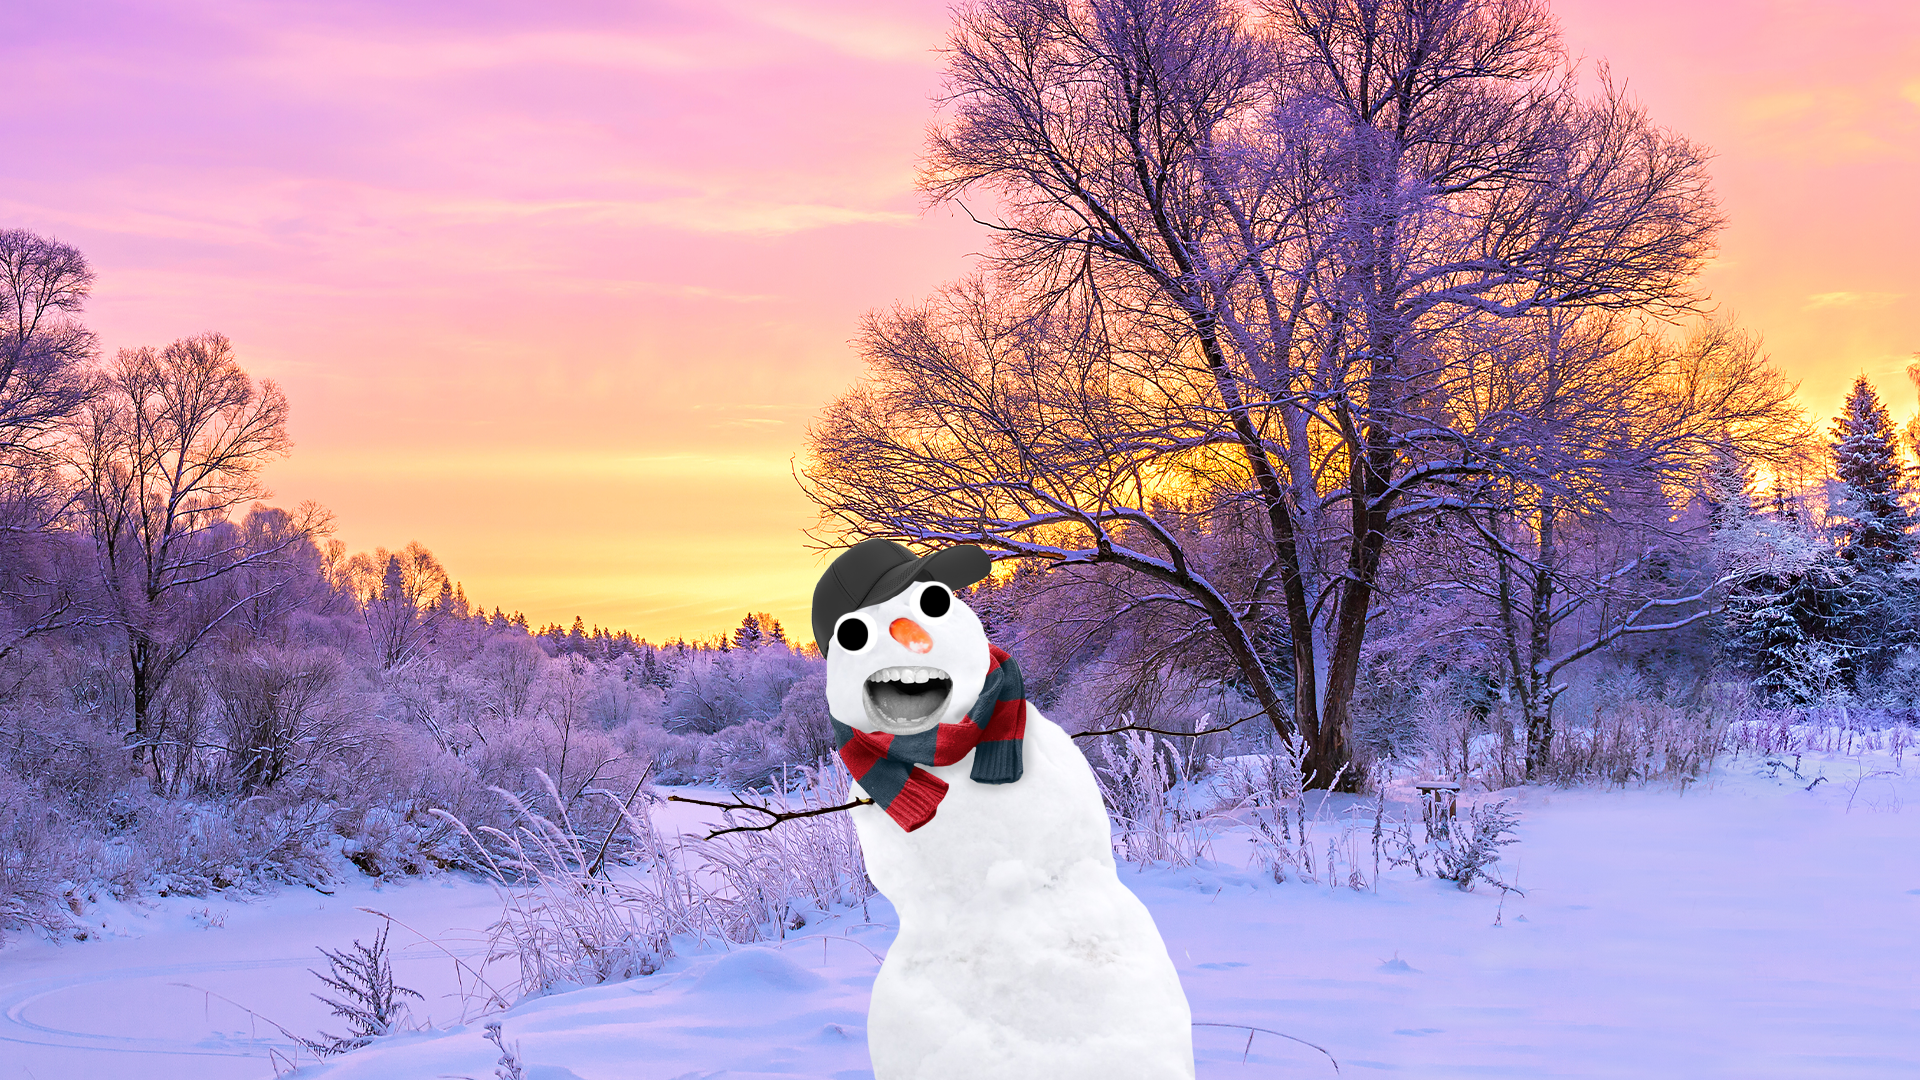 Beano snowman in snowy scene